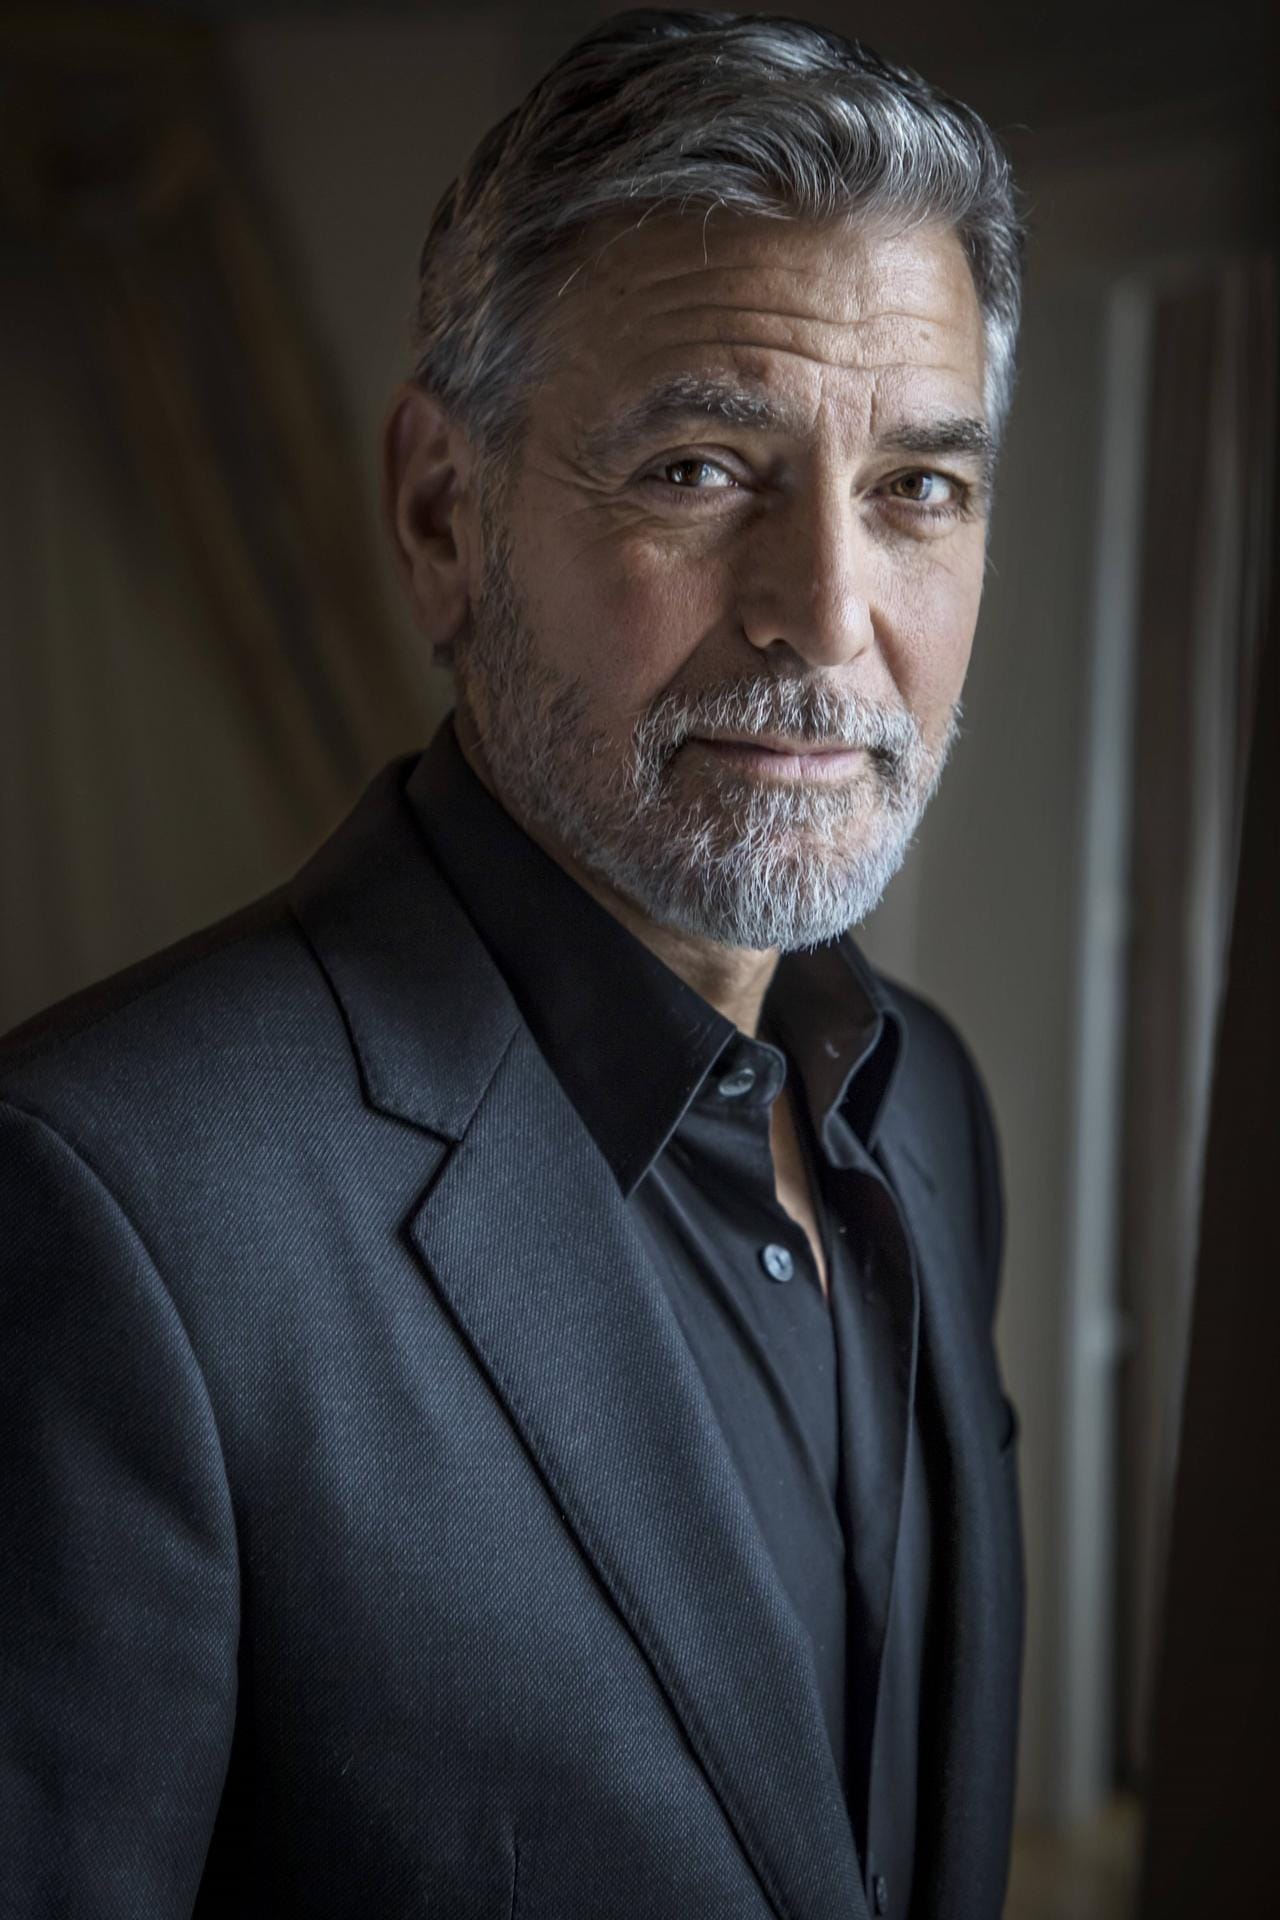 Nach "Emergency Room" ging es für George Clooney erst richtig bergauf. Heute zählt er zu den berühmtesten Schauspielern der Welt.